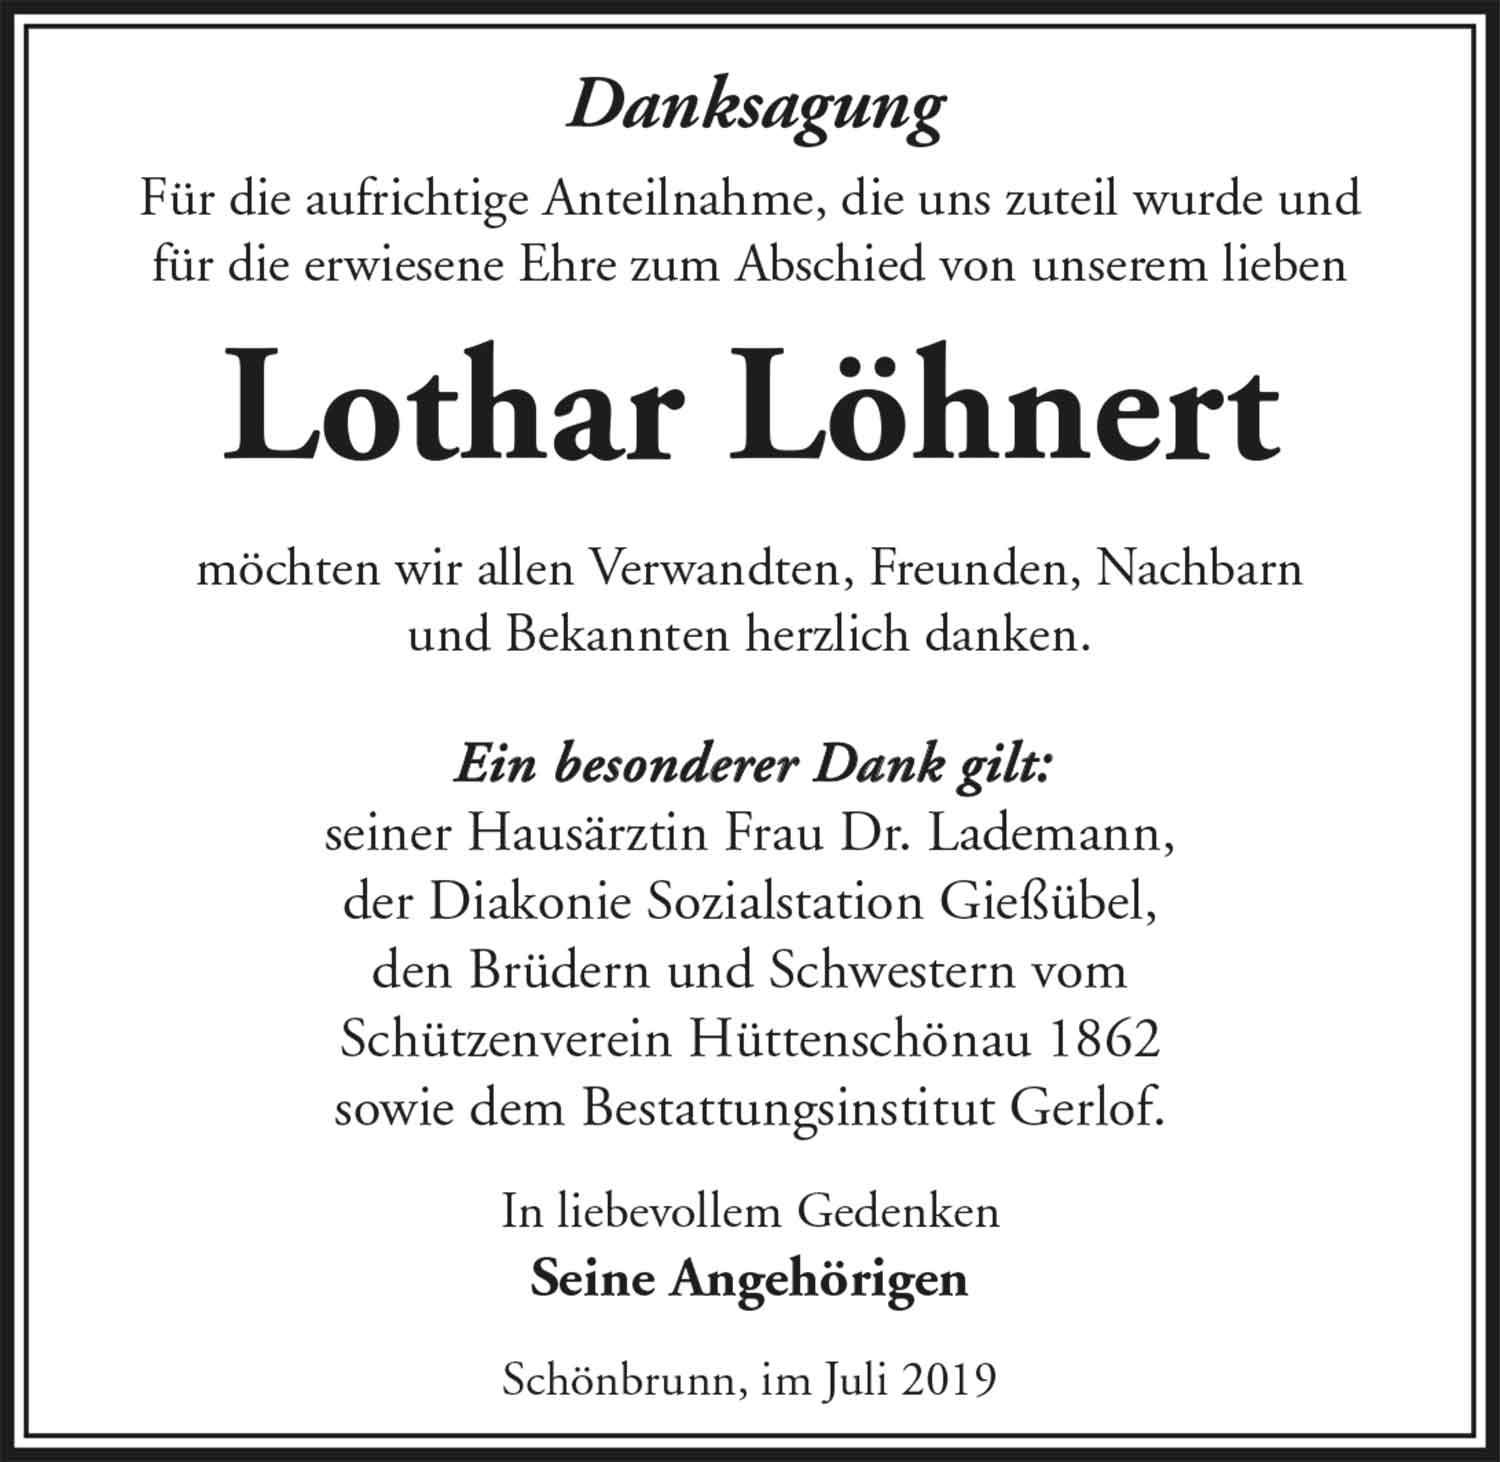 Danksagung_Lothar_Loehnert